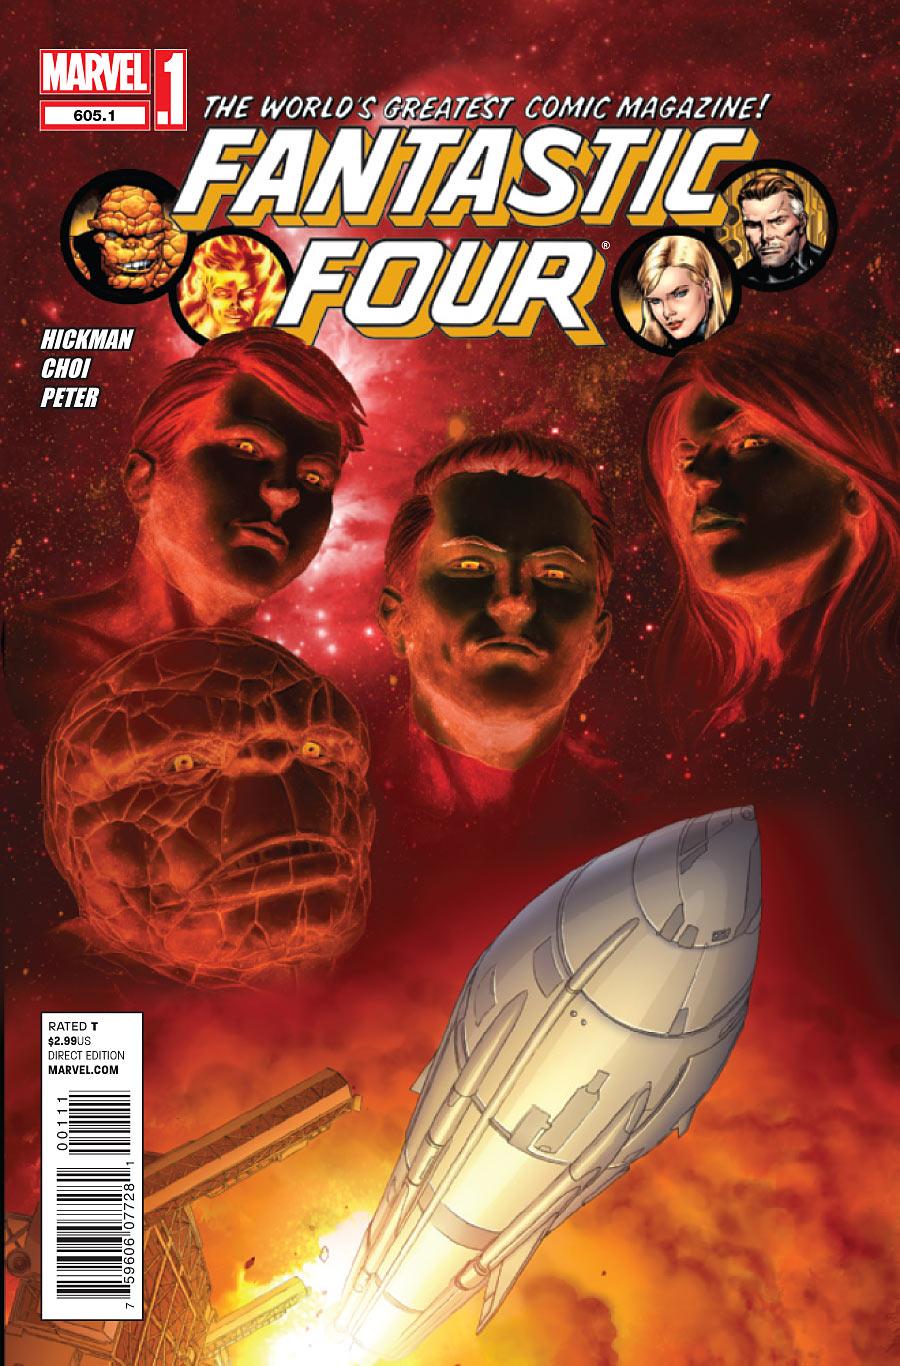 Fantastic Four Vol. 1 #605.1